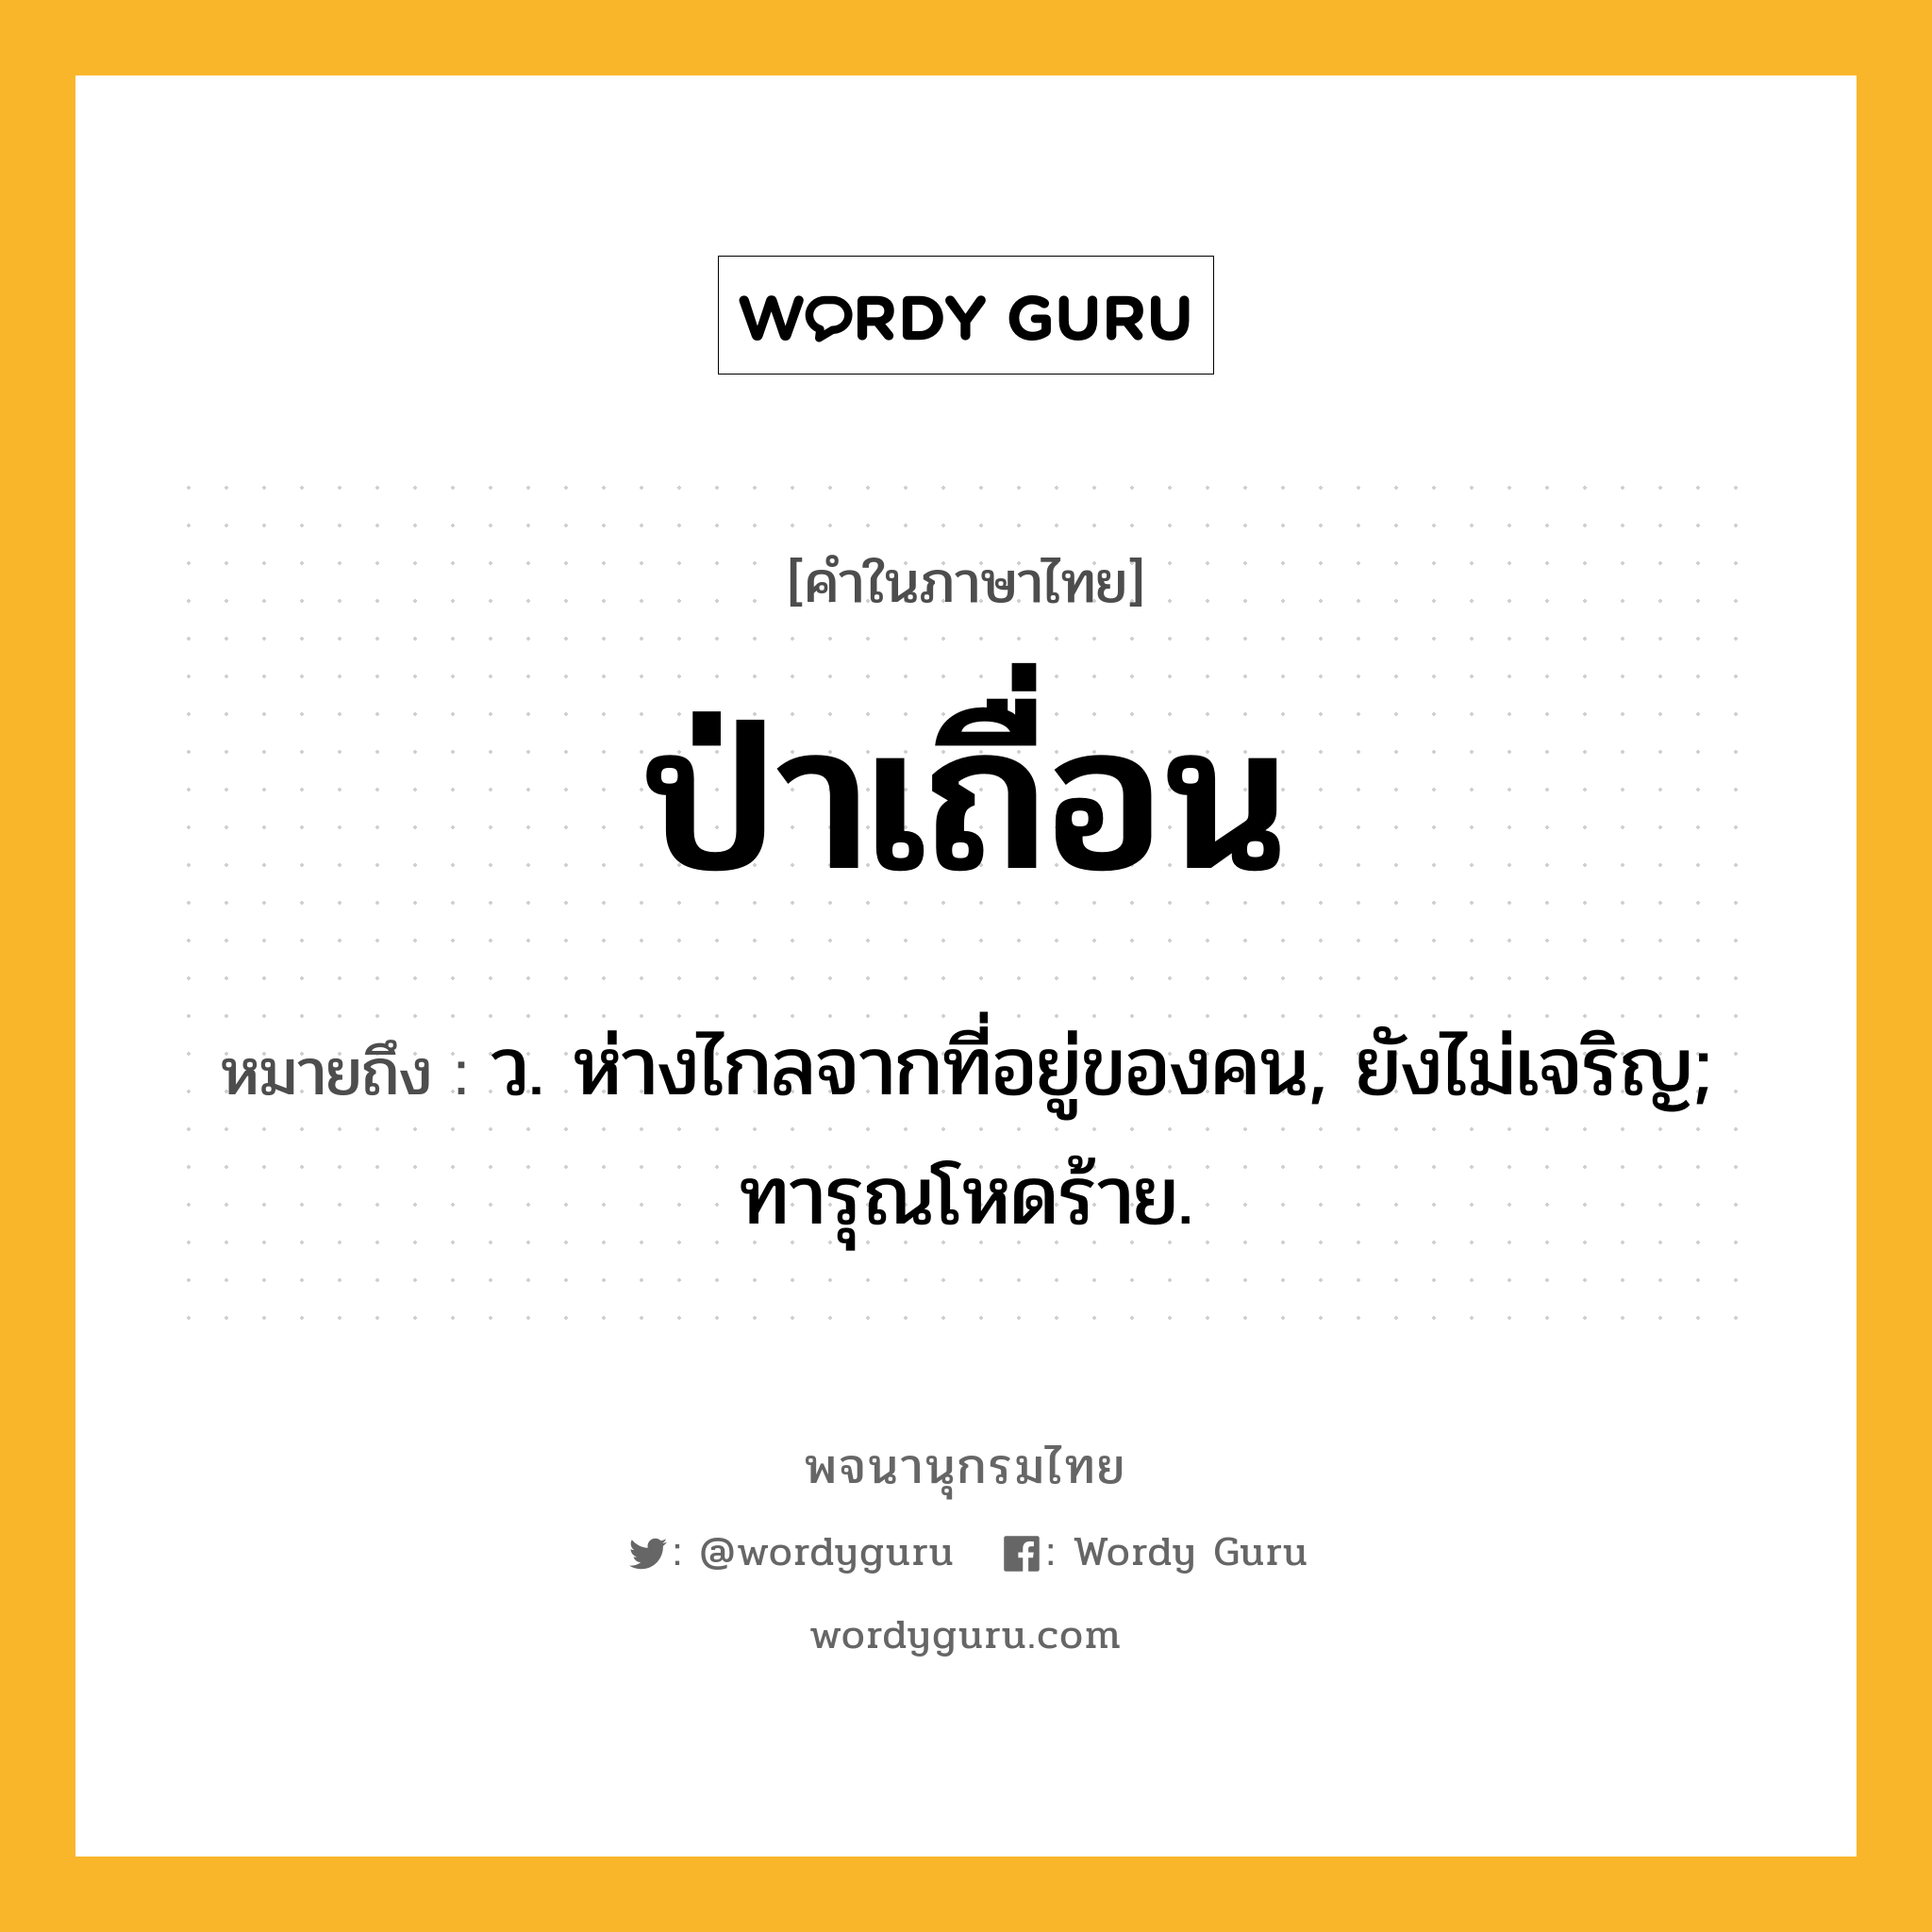 ป่าเถื่อน ความหมาย หมายถึงอะไร?, คำในภาษาไทย ป่าเถื่อน หมายถึง ว. ห่างไกลจากที่อยู่ของคน, ยังไม่เจริญ; ทารุณโหดร้าย.